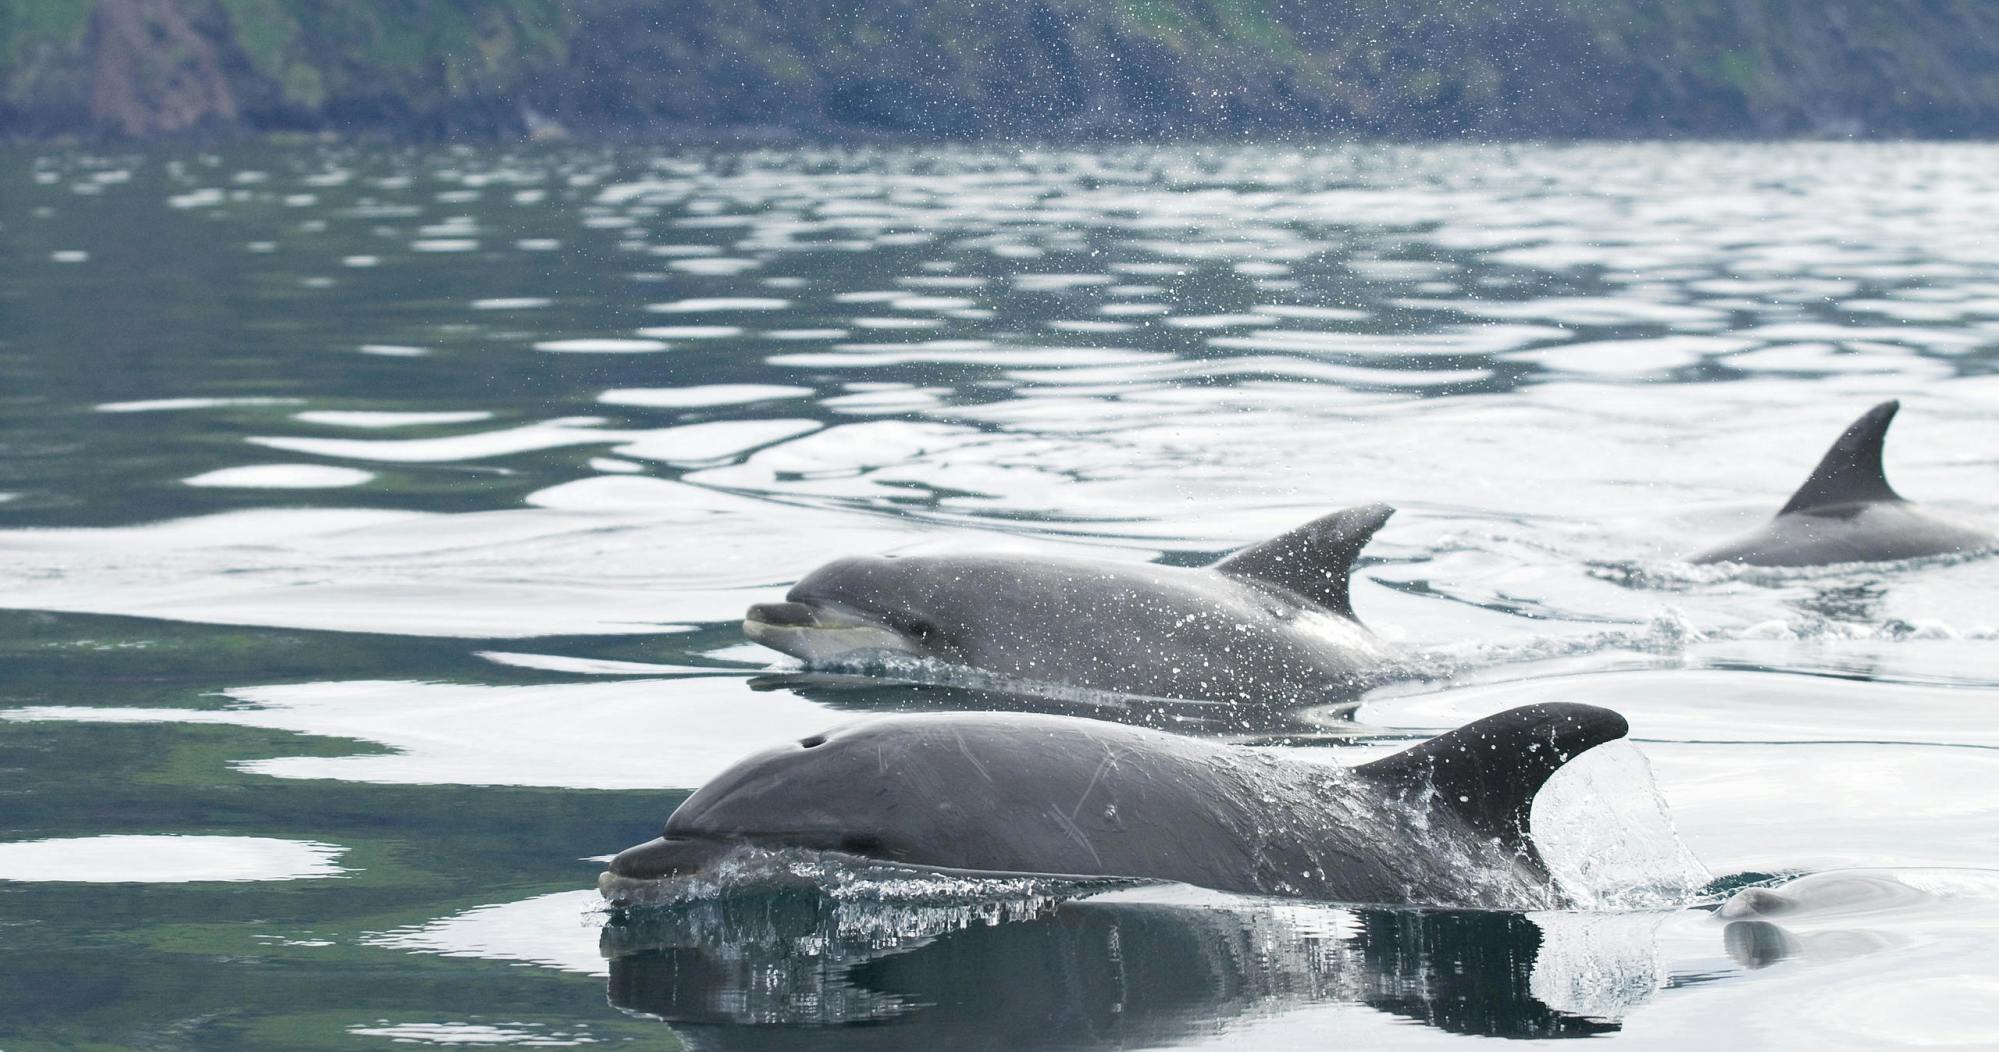 Bootstour zur Wal- und Delfinbeobachtung auf der Insel Pico